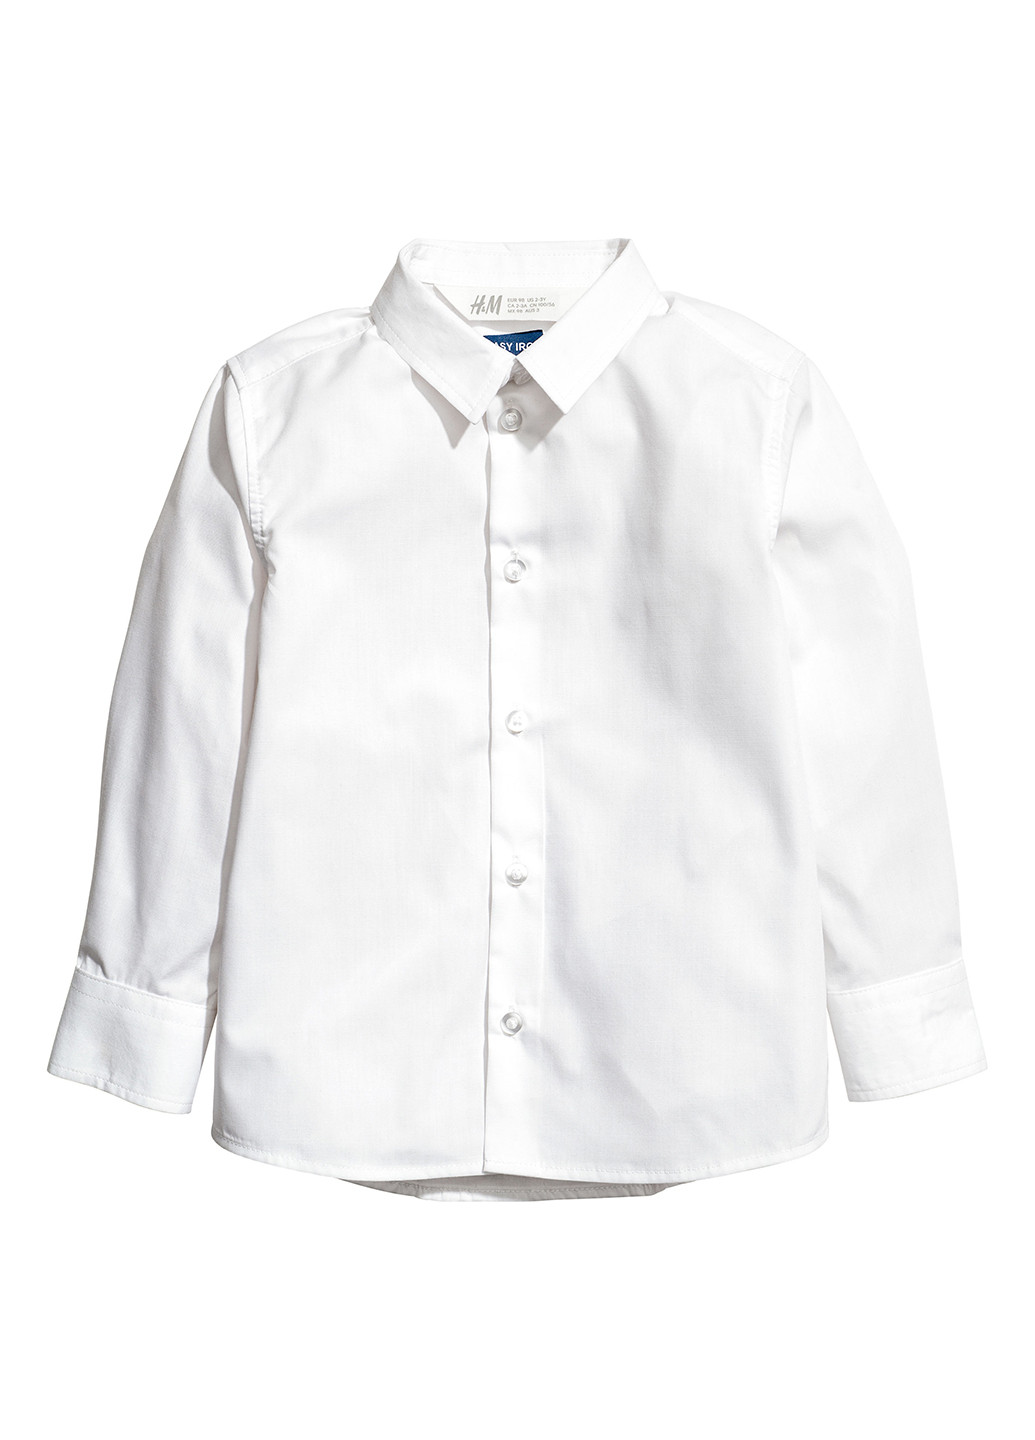 Белая классическая рубашка H&M с длинным рукавом